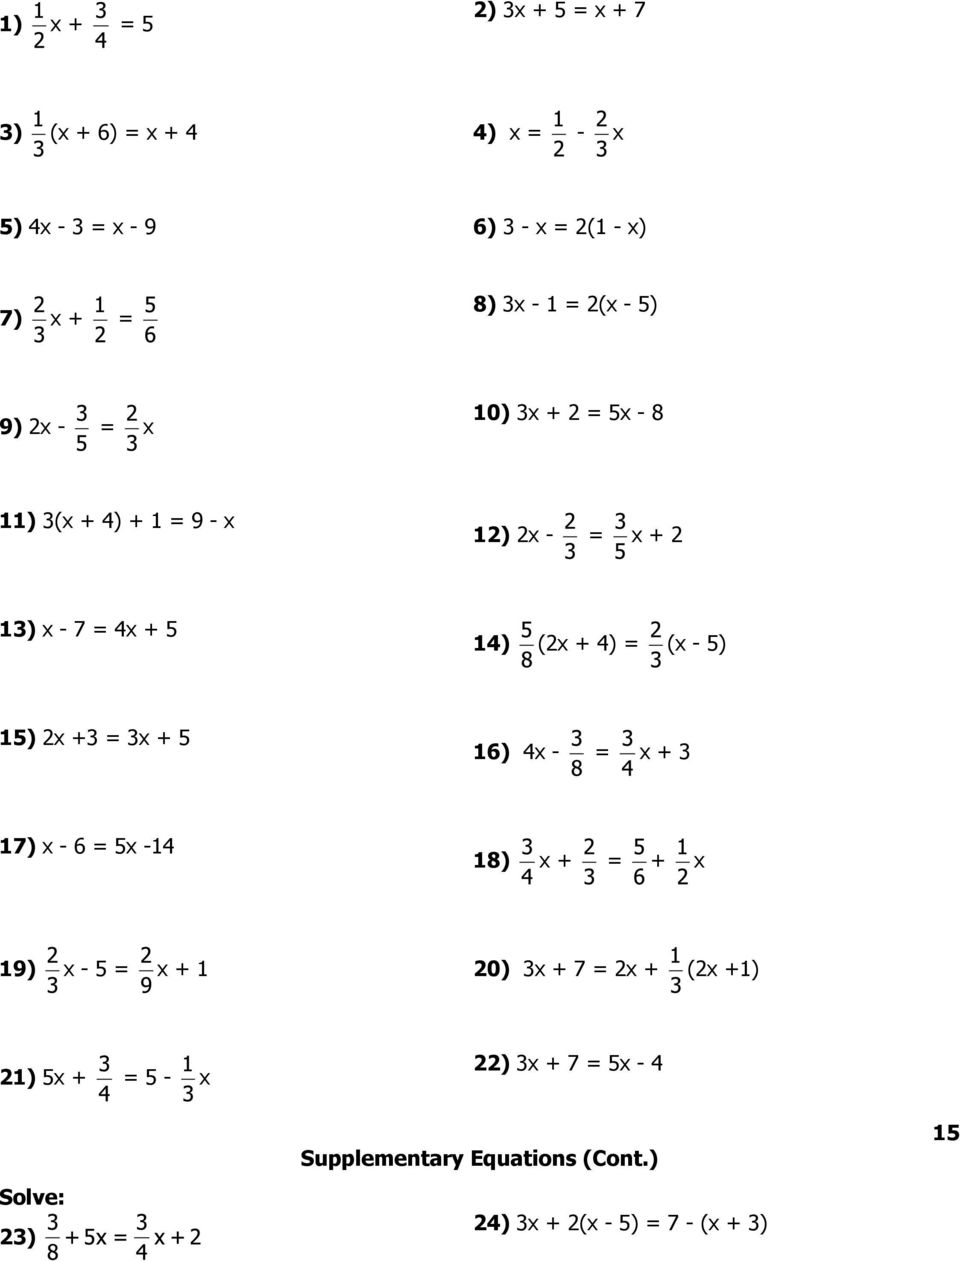 (x - 5) 15) 2x +3 = 3x + 5 16) 4x - = x + 3 17) x - 6 = 5x -14 18) x + = + x 19) x - 5 = x + 1 20) 3x + 7 = 2x + (2x